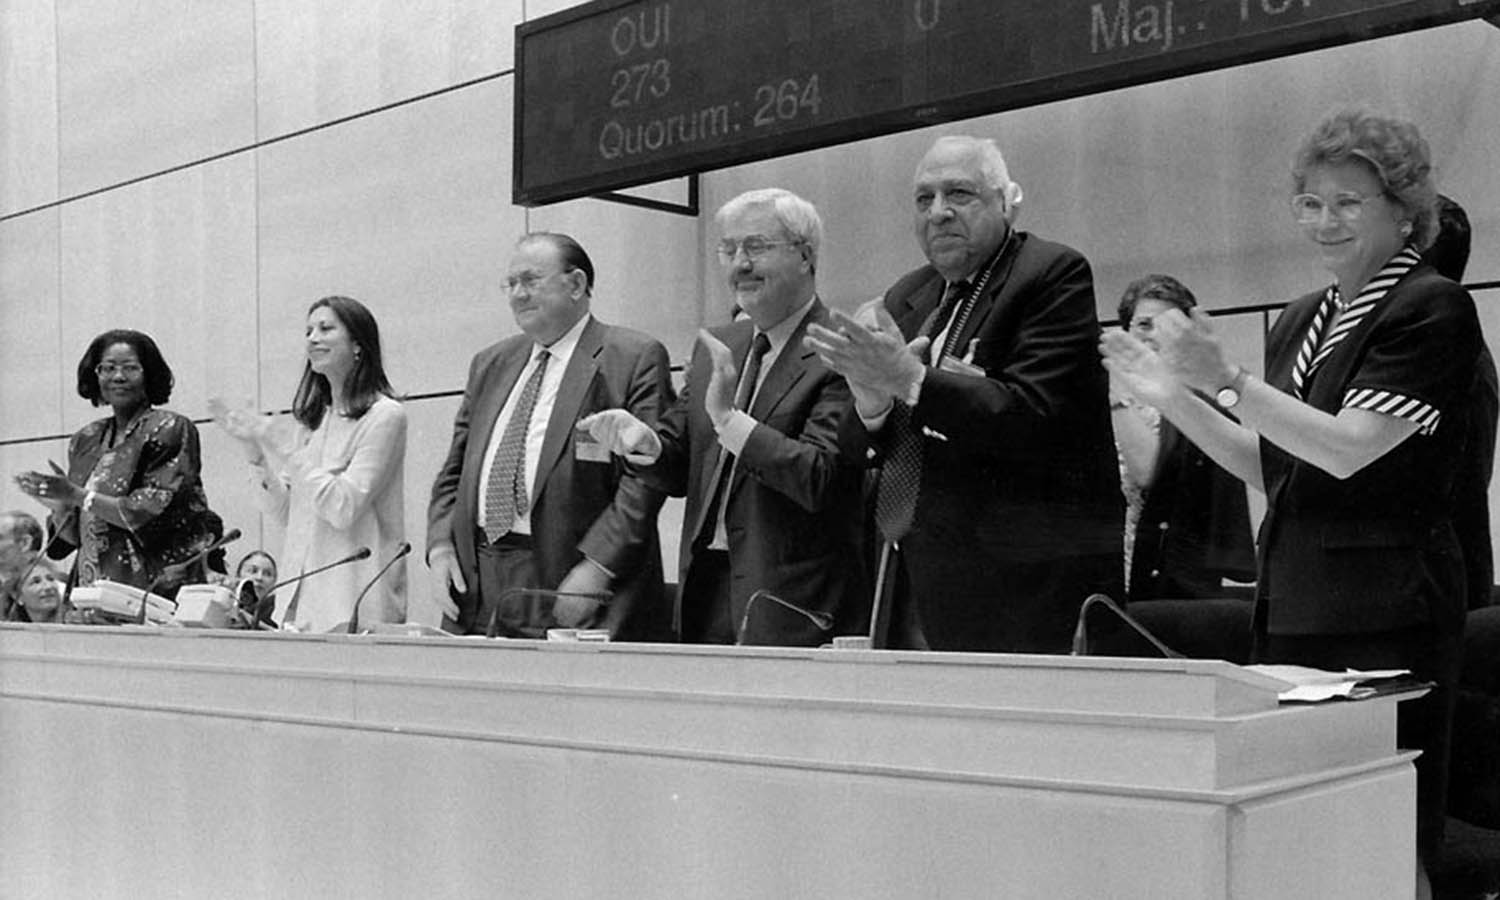 86a sessione della Conferenza Internazionale del lavoro, nella quale viene adottata la dichiarazione OIL sui principi e i diritti fondamentali del lavoro, Archivi storici OIL, 1998.